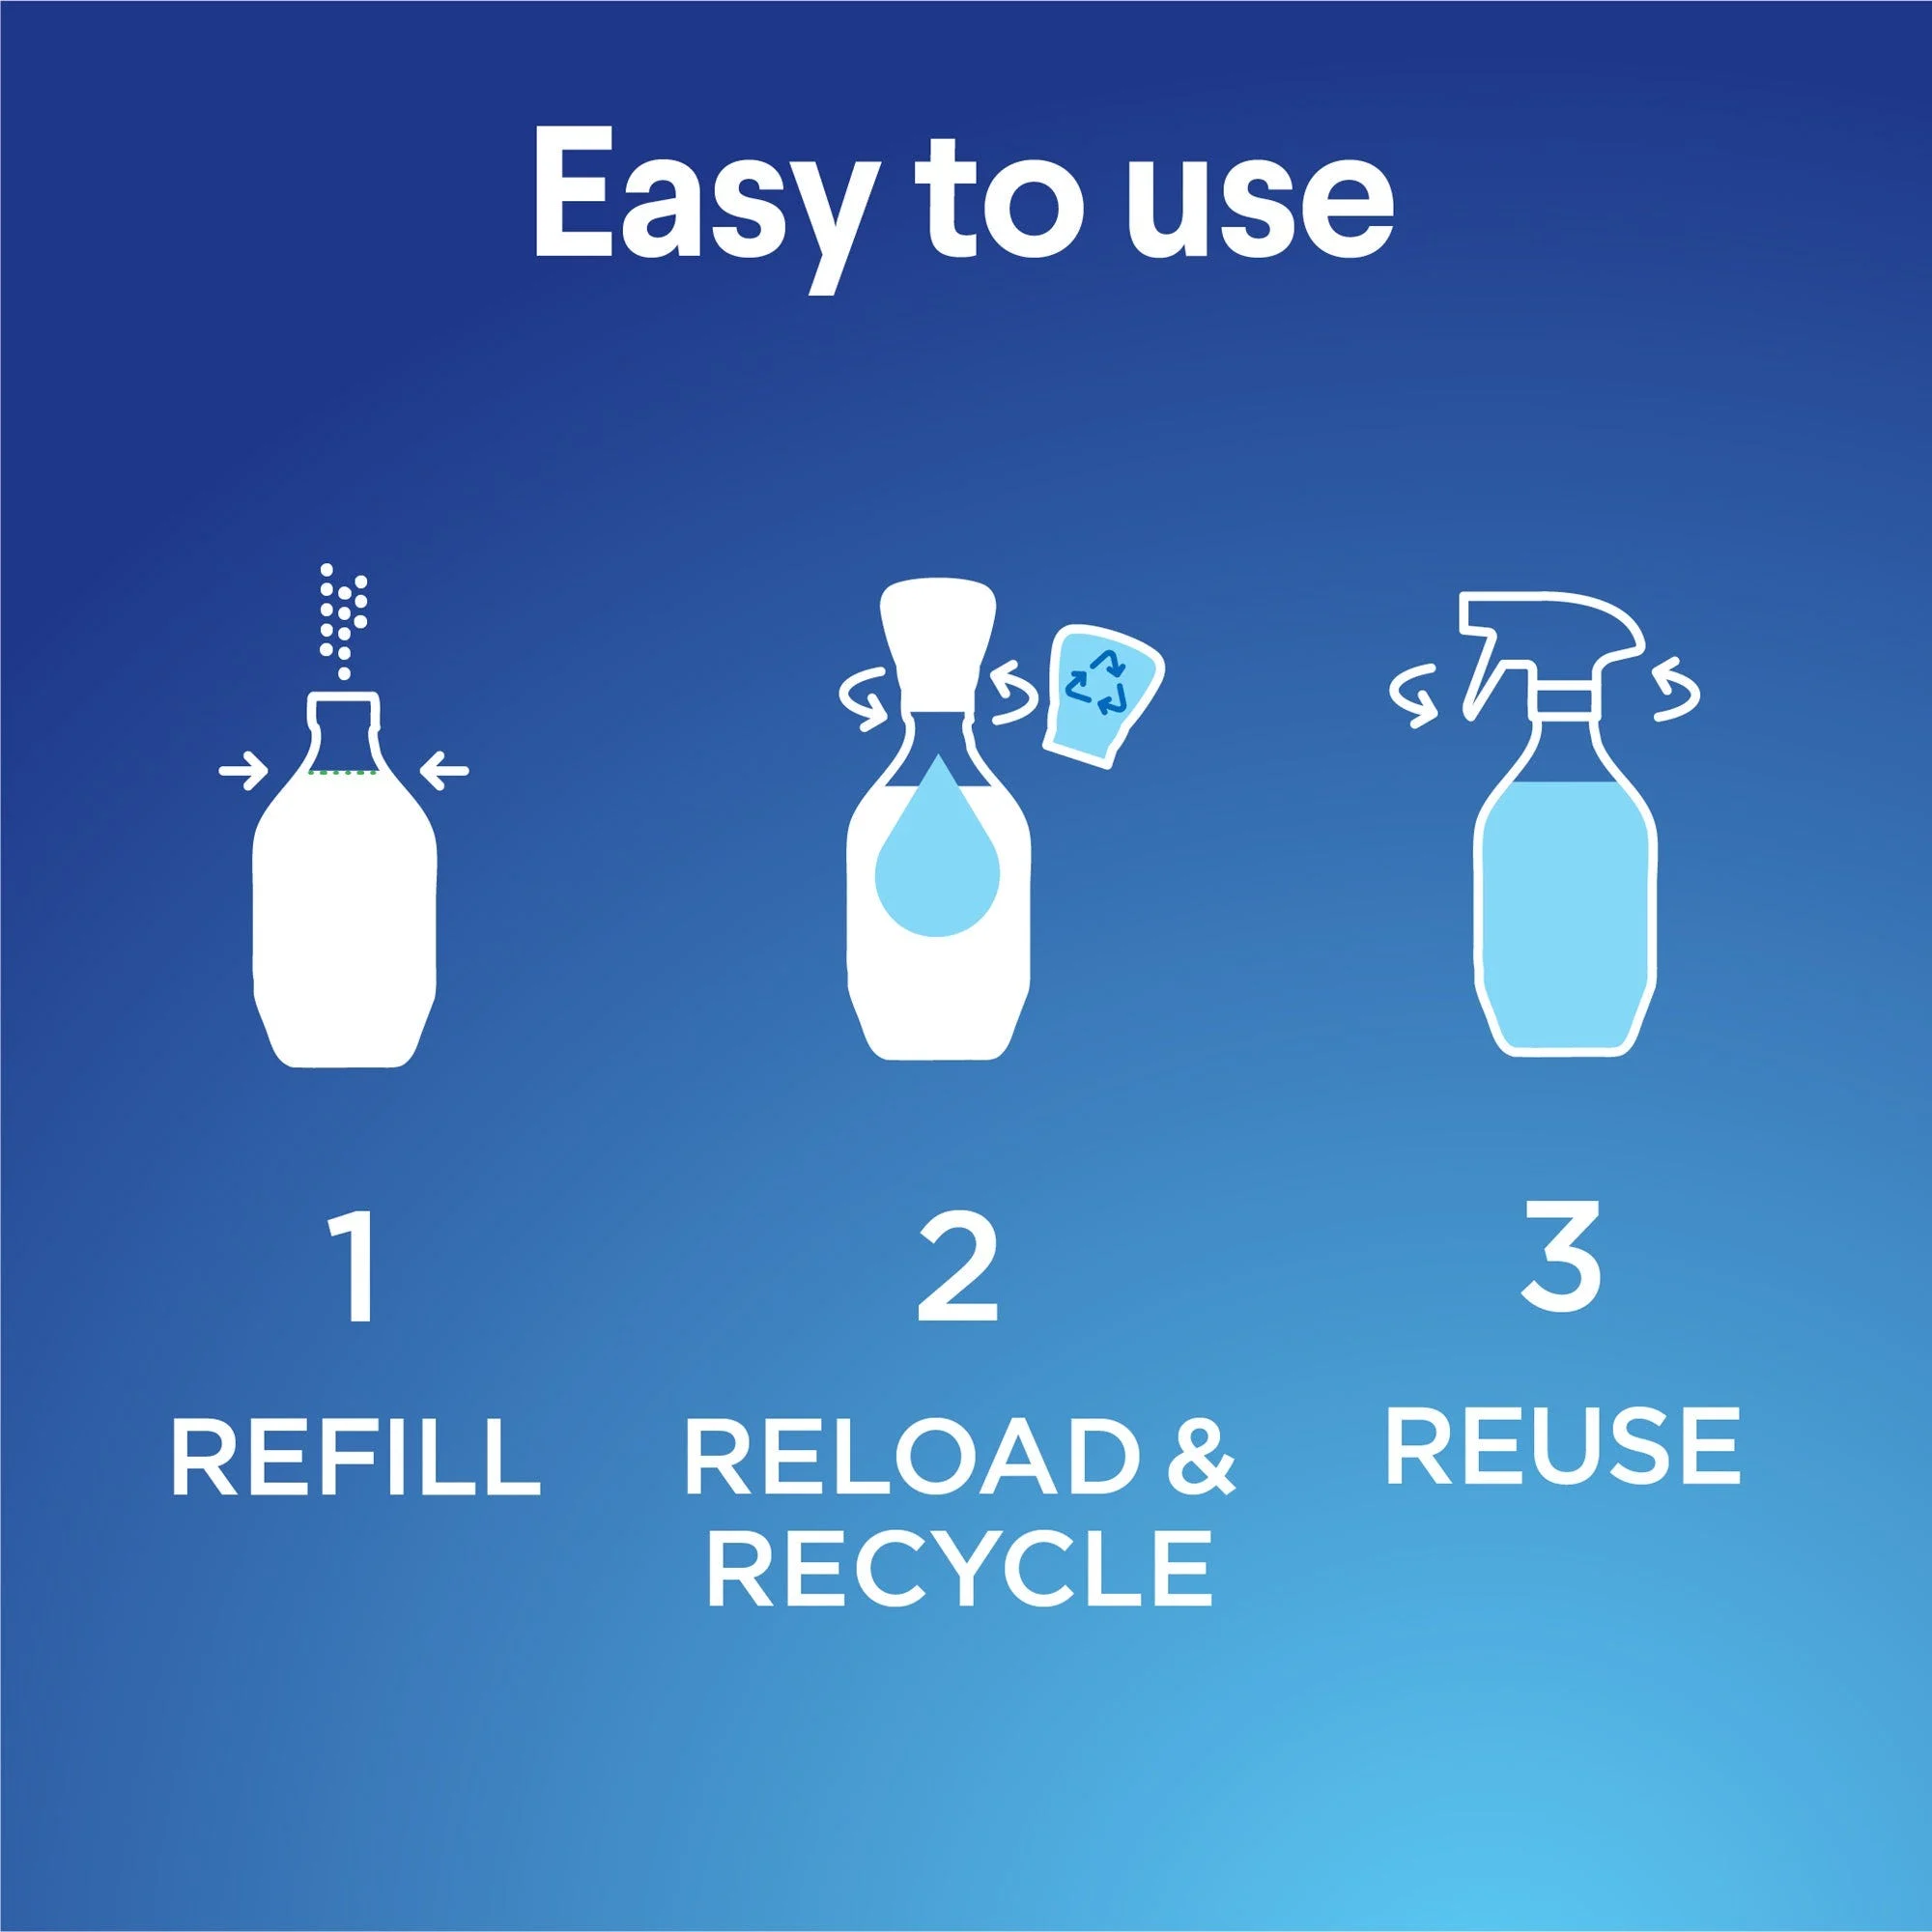 Es fácil de usar. Rellena de agua la botella reutilizable, cambia el cartucho de repuesto y recicla el cartucho vacío. Coloca la boquilla rociadora reutilizable en la botella y listo.